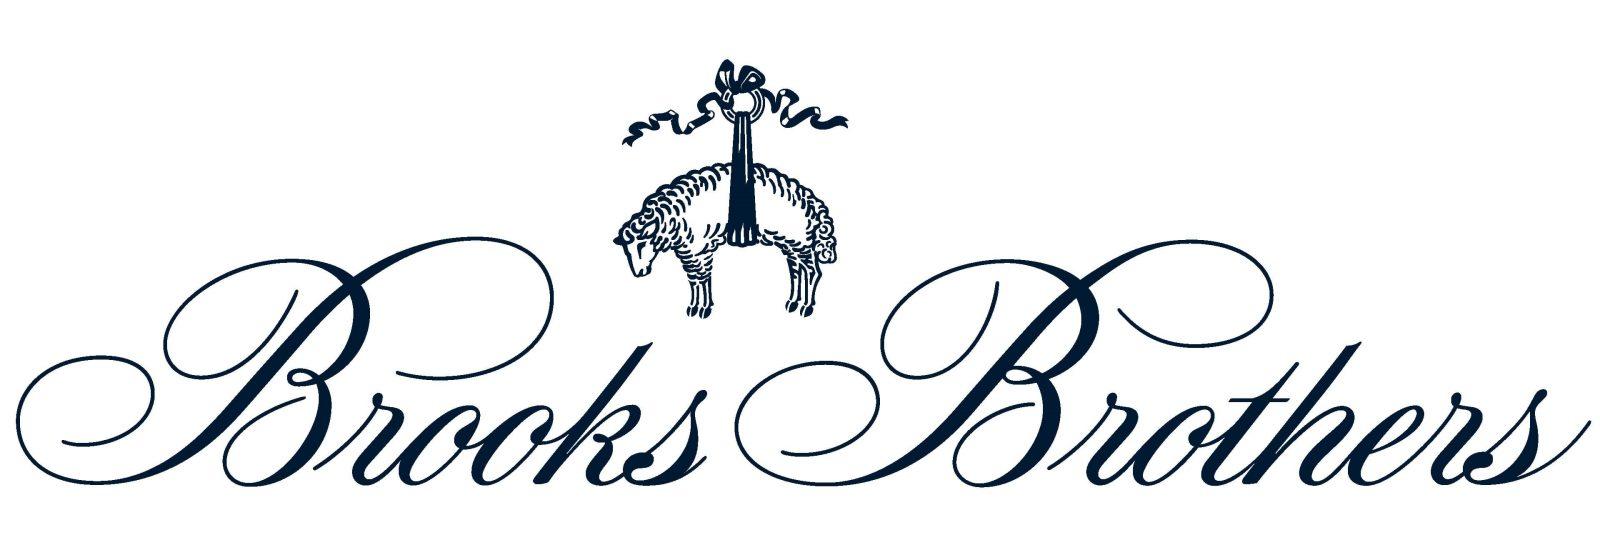 Логотип бренда Brooks Brothers - История бренда Brooks Brothers